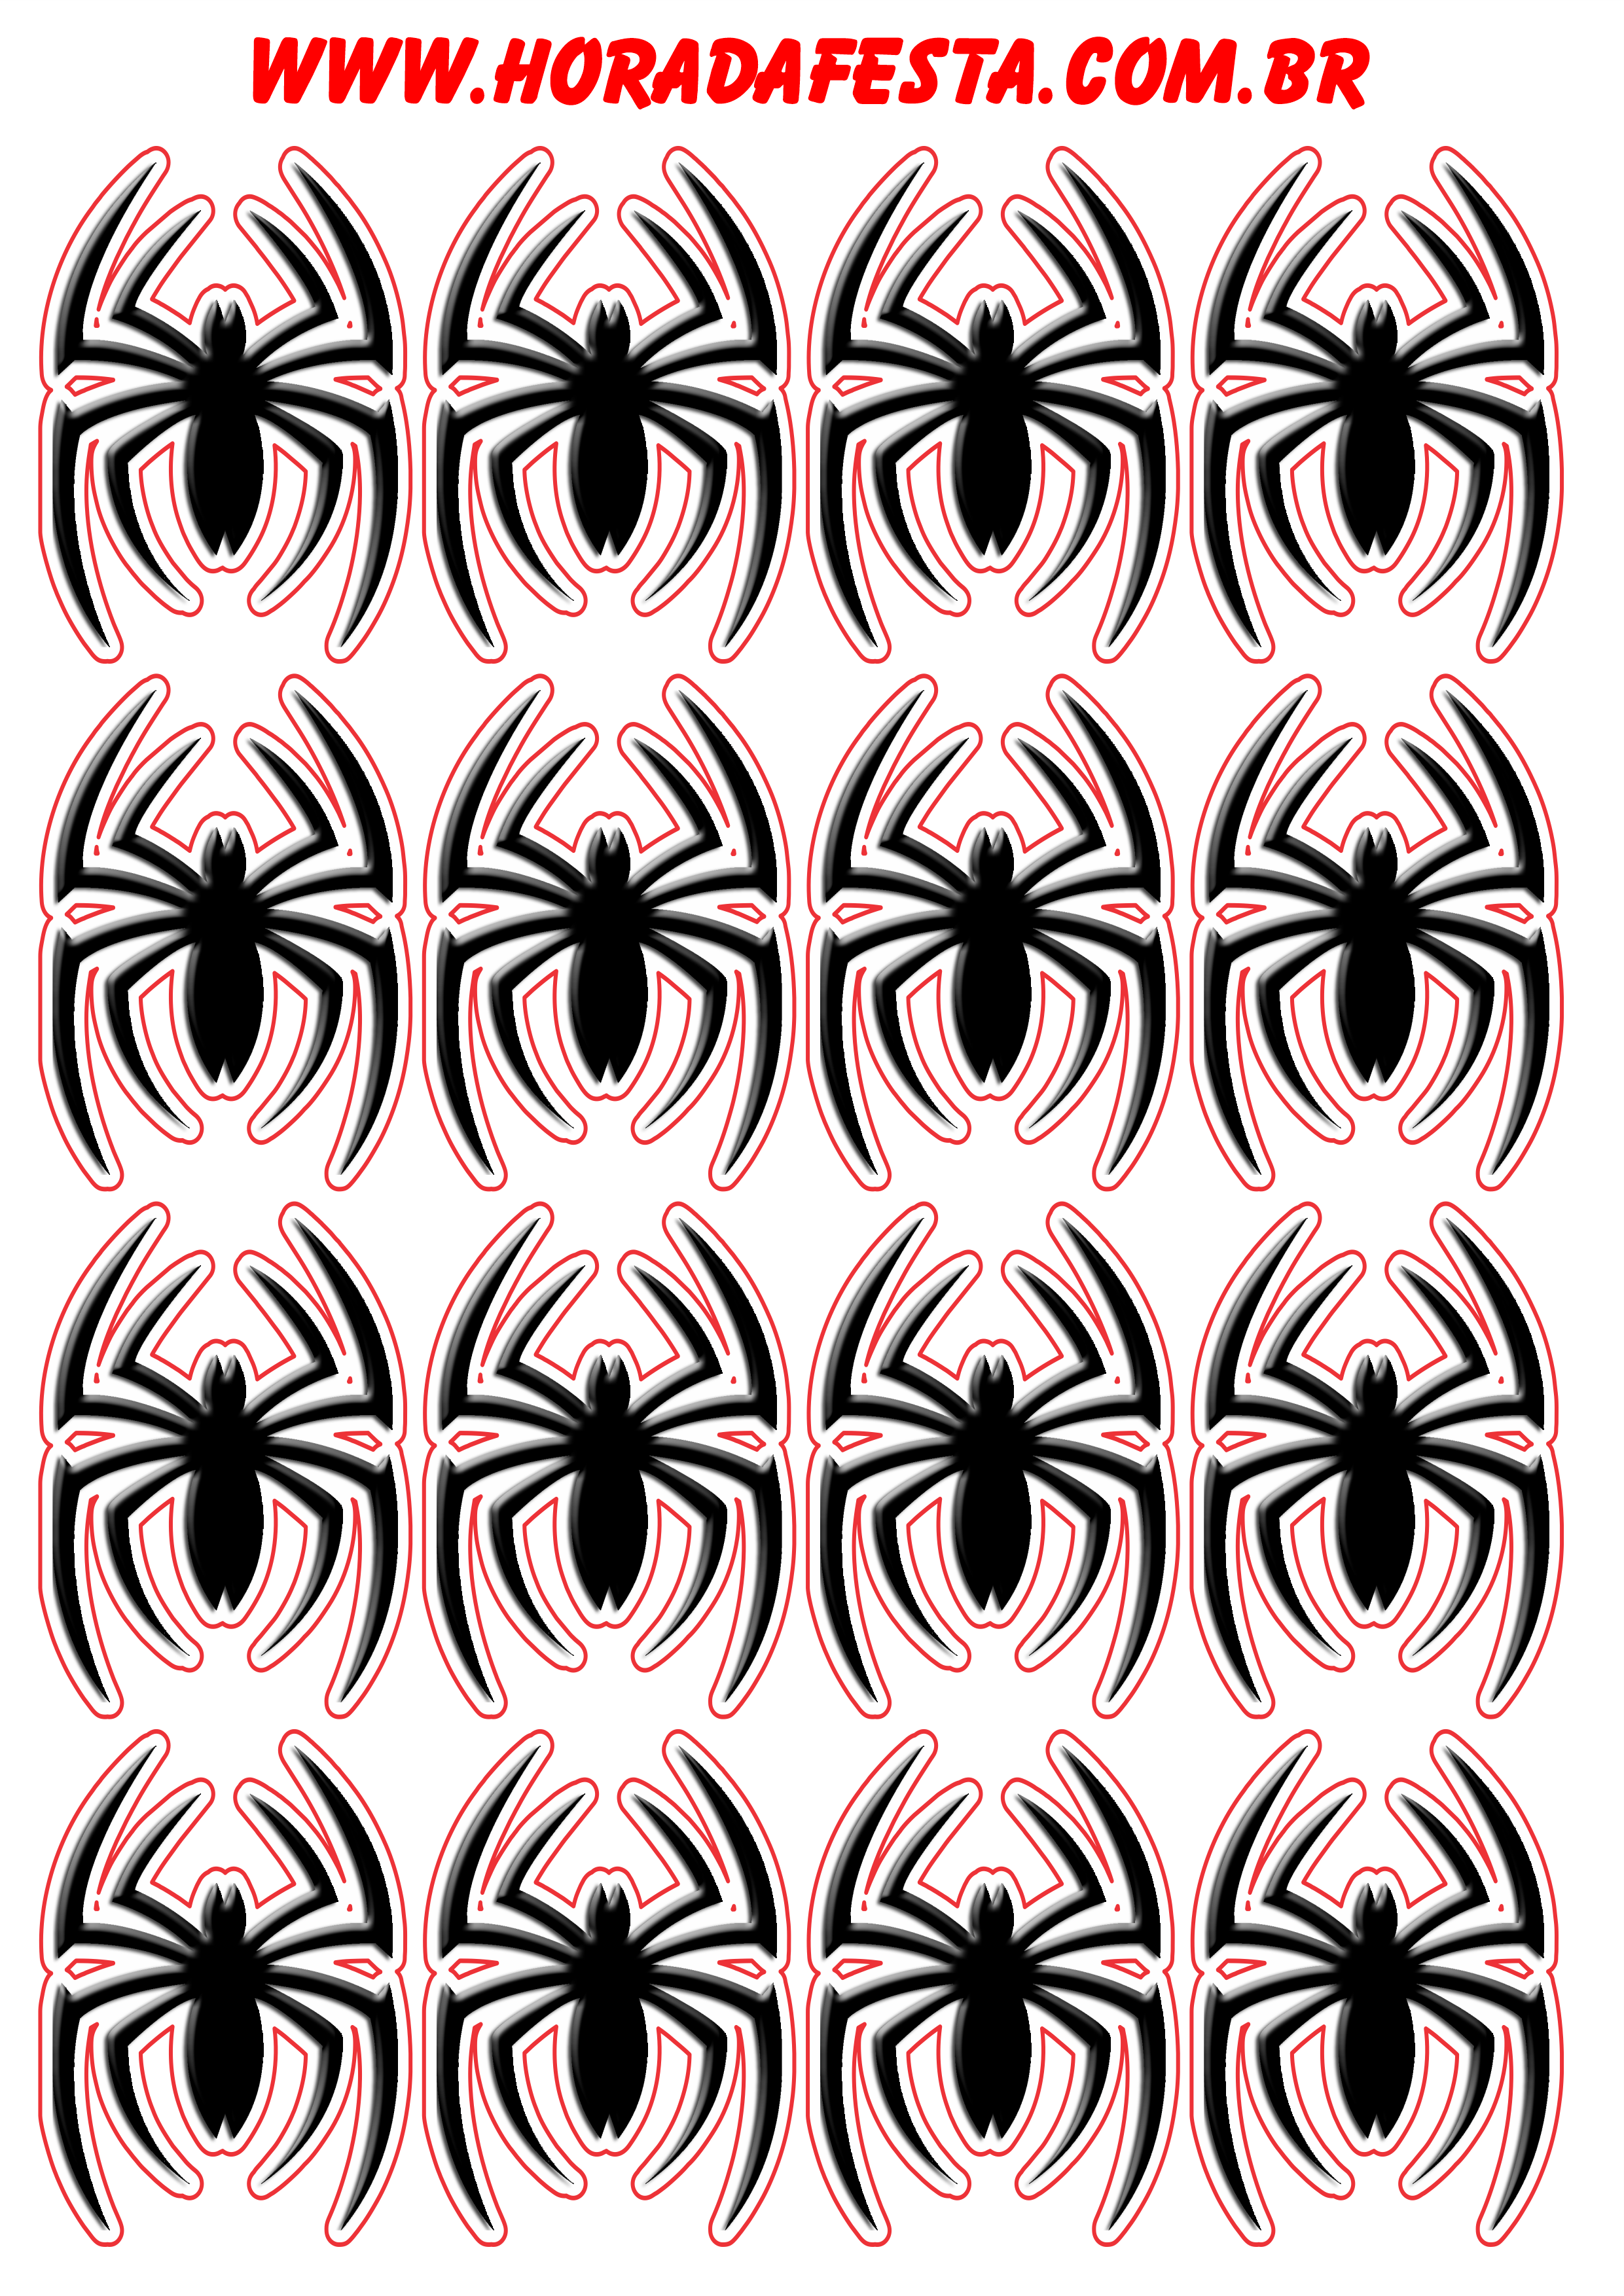 Homem aranha logo desenho cartela de adesivos tags sticker decoração de aniversário artigos de papelaria png